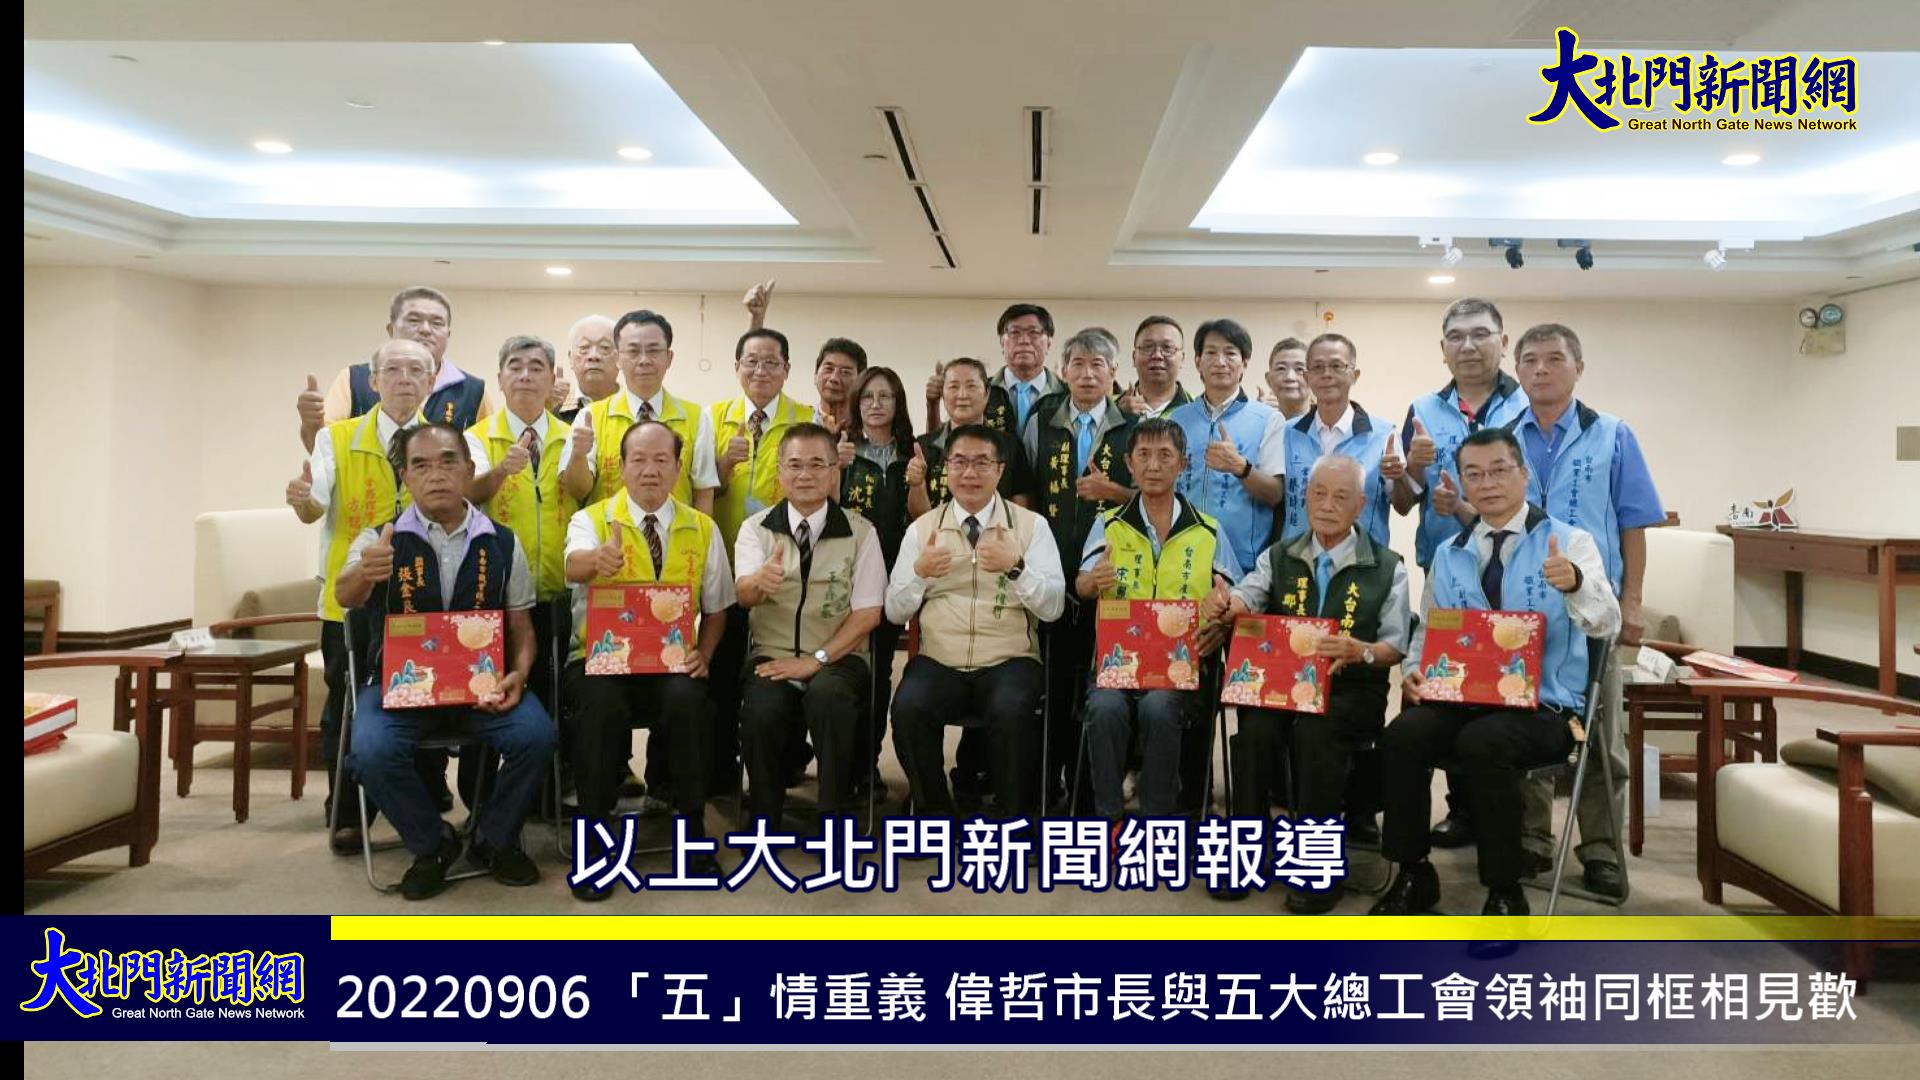 「五」情重義-偉哲市長與五大總工會領袖同框相見歡臺南勞工代表齊心力挺拼連任